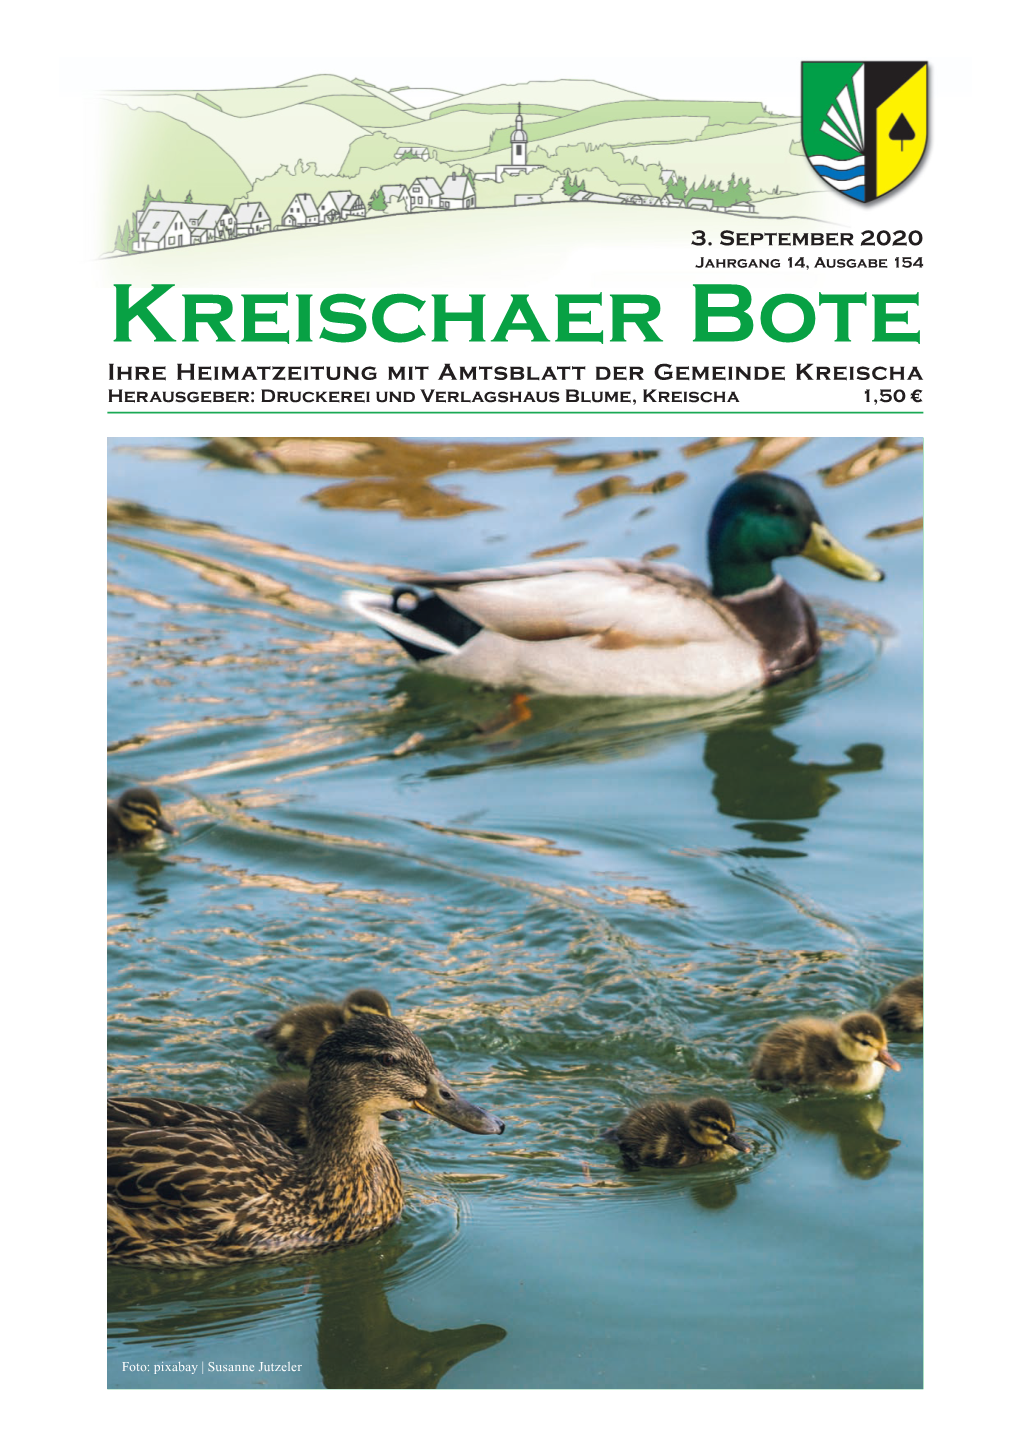 Kreischaer Bote Ihre Heimatzeitung Mit Amtsblatt Der Gemeinde Kreischa Herausgeber: Druckerei Und Verlagshaus Blume, Kreischa 1,50 €